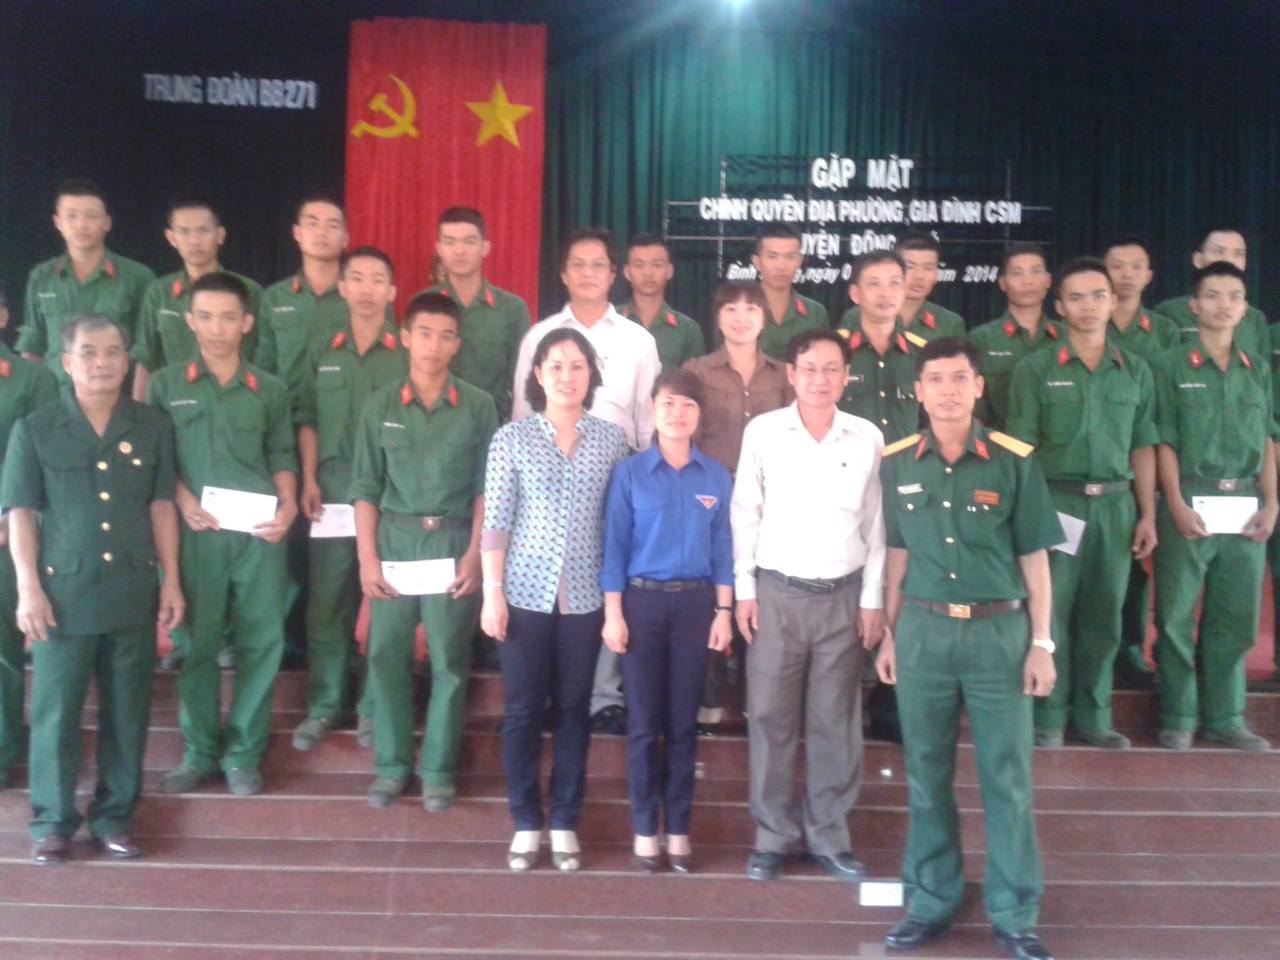 Đồng Phú: Thăm và tặng quà cho chiến sỹ mới năm 2014